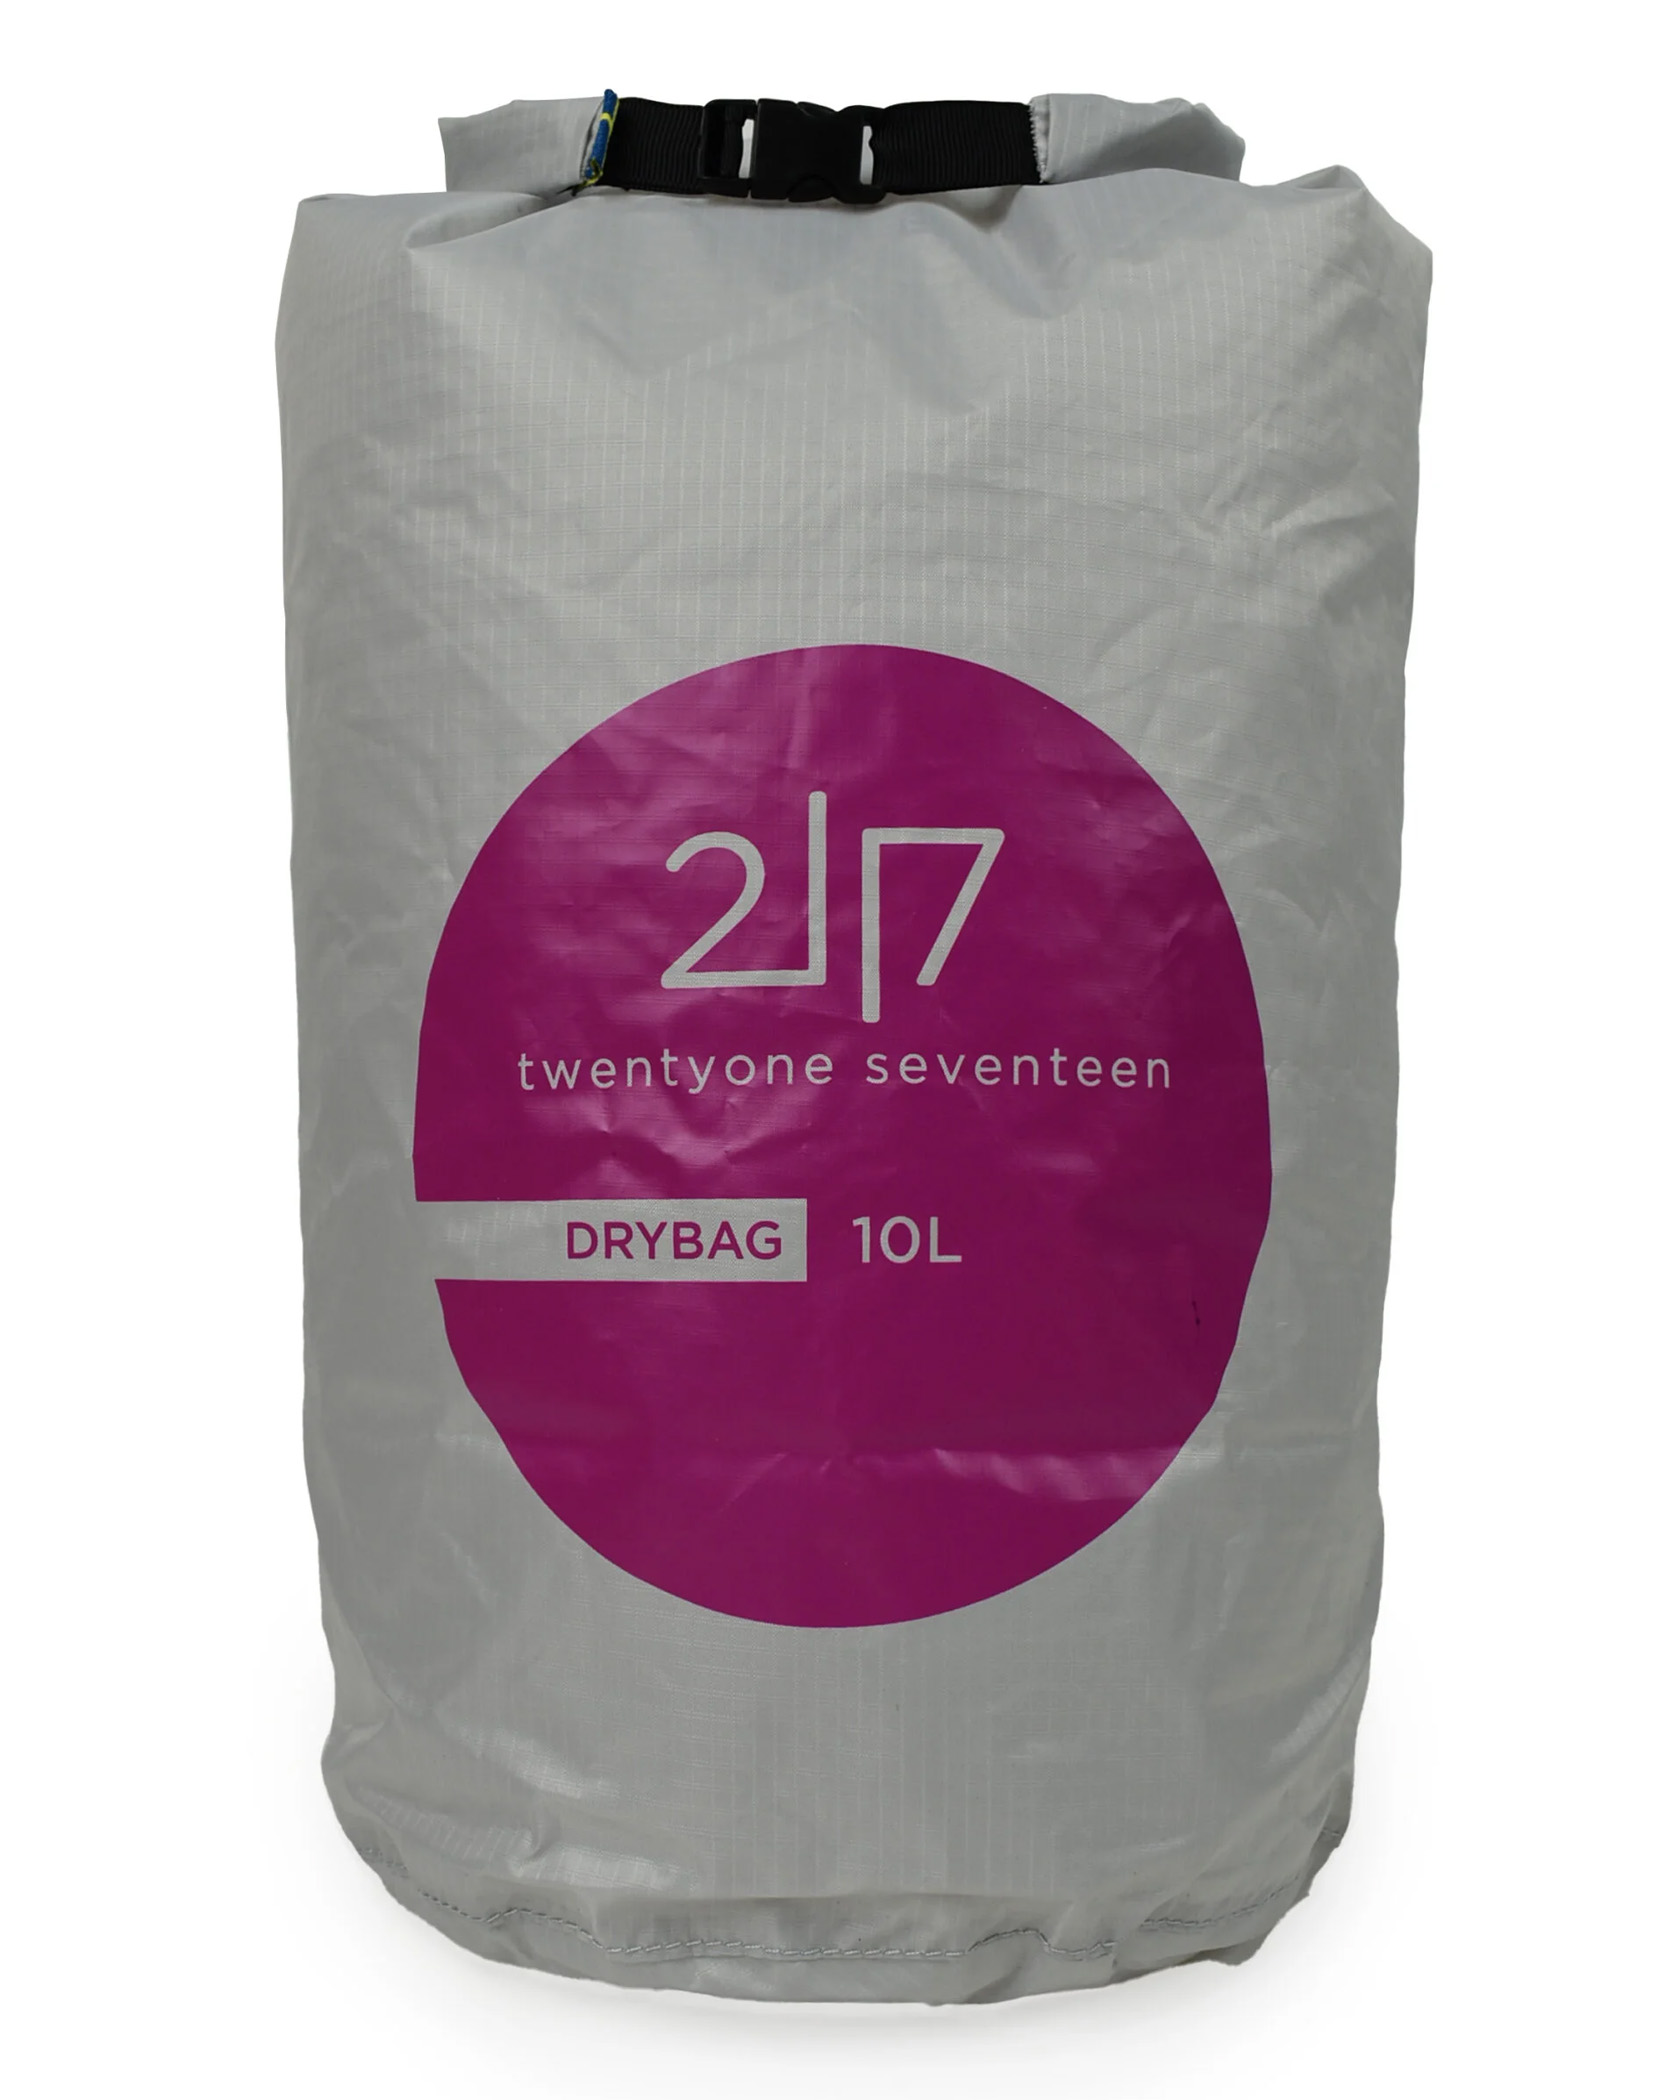 2117 of Sweden Drybag 10L LT Grey (Storlek 10L)